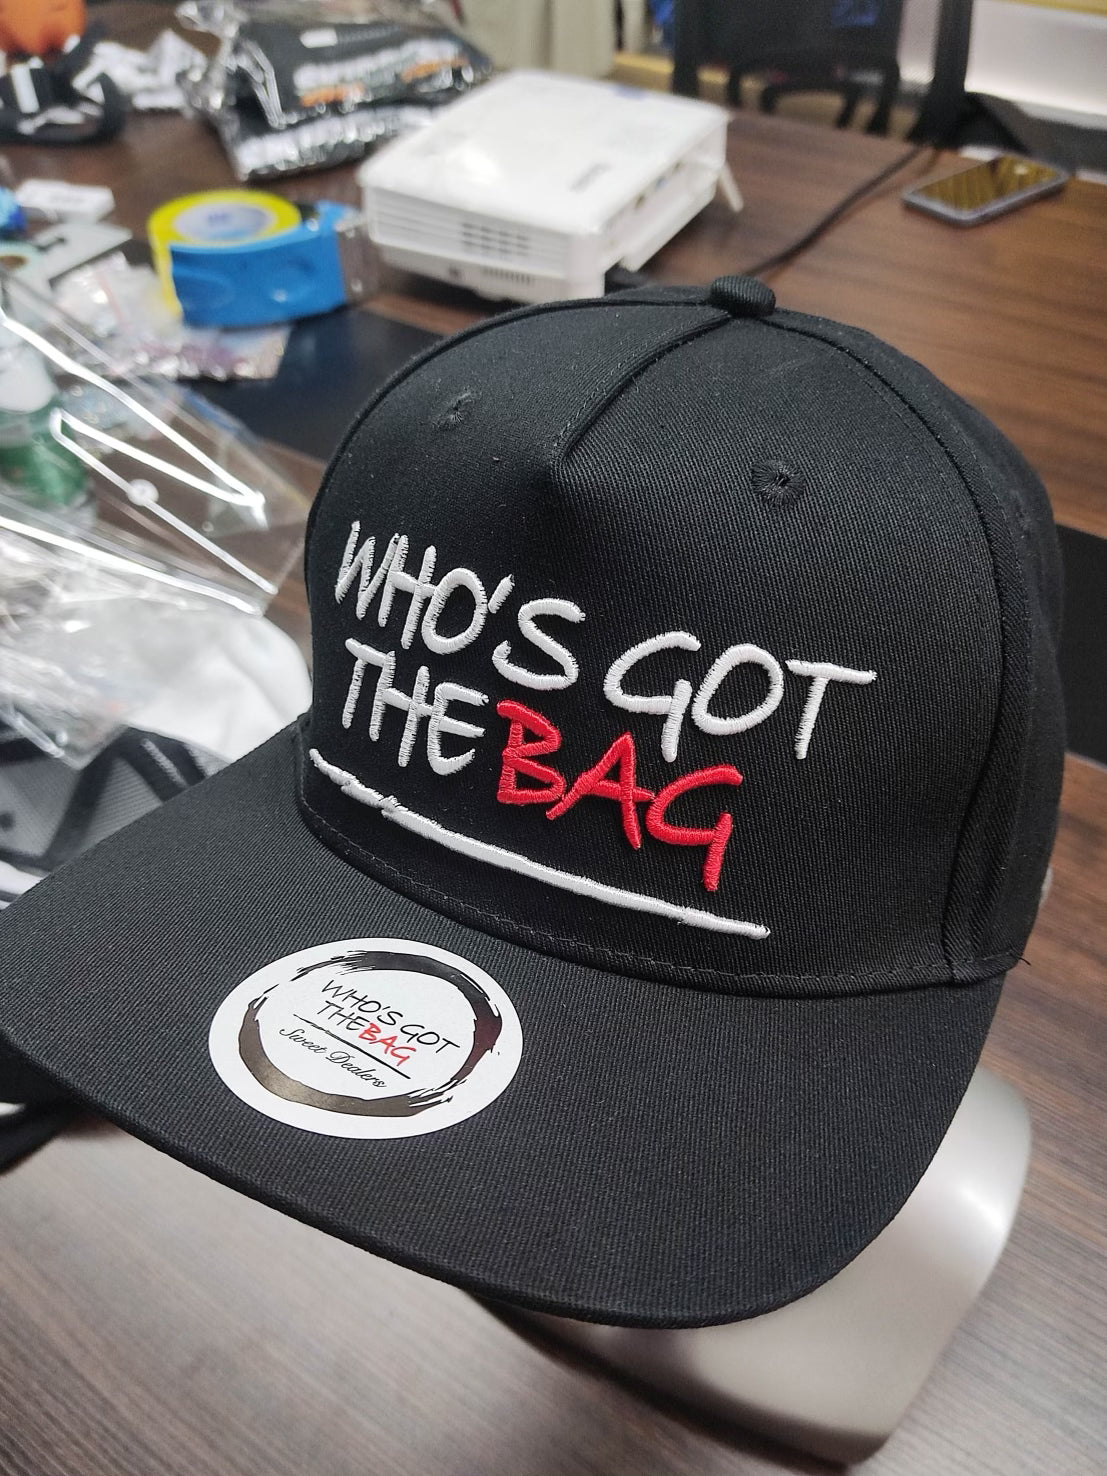 Who’s Got The Bag Cap